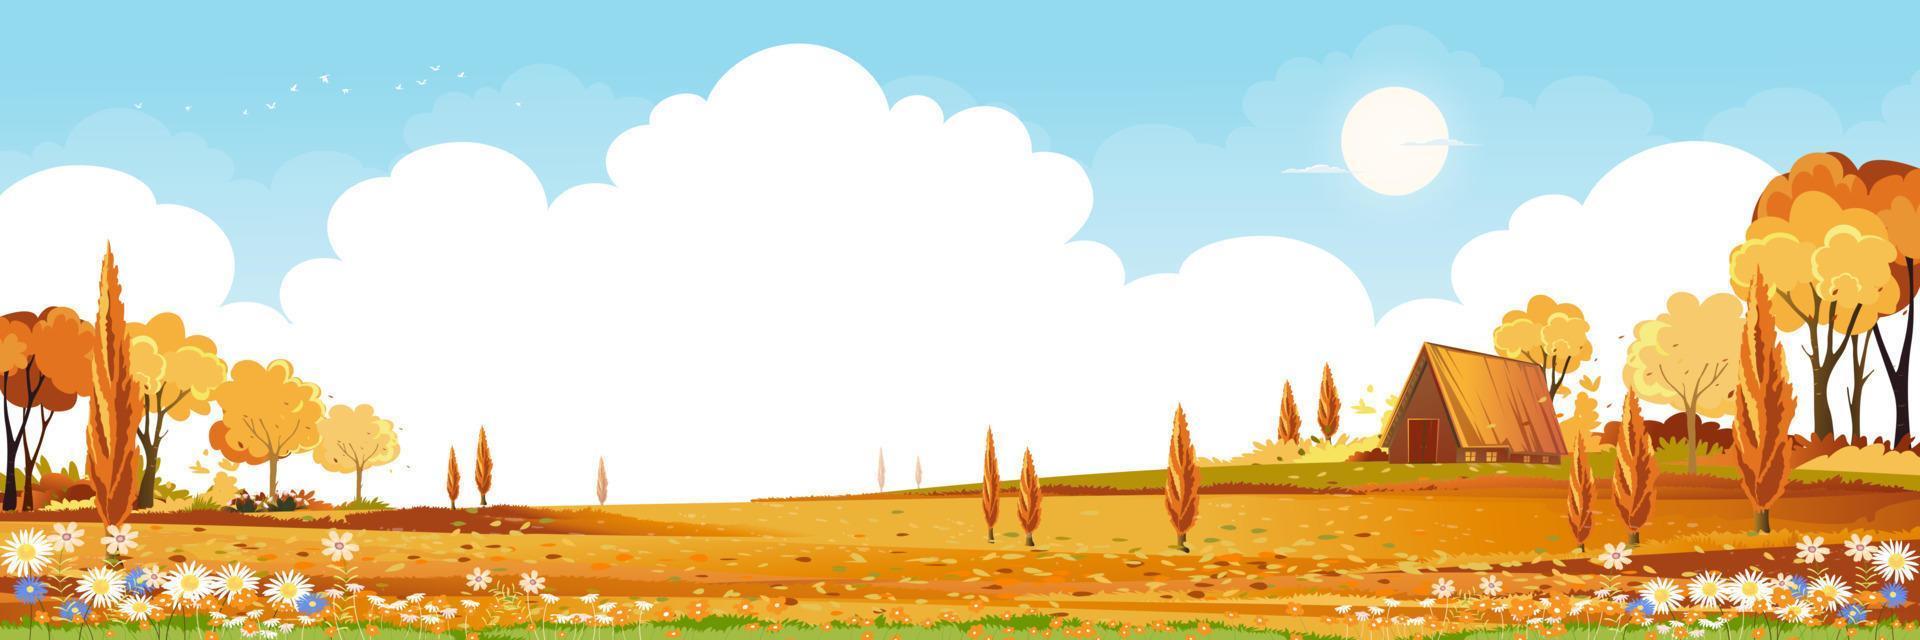 herfst veld landschap met berg, blauwe lucht, wolk, panorama herfst landelijke natuur met bereik gebladerte, cartoon vector illustratie banner voor thanksgiving of medio herfst festival achtergrond